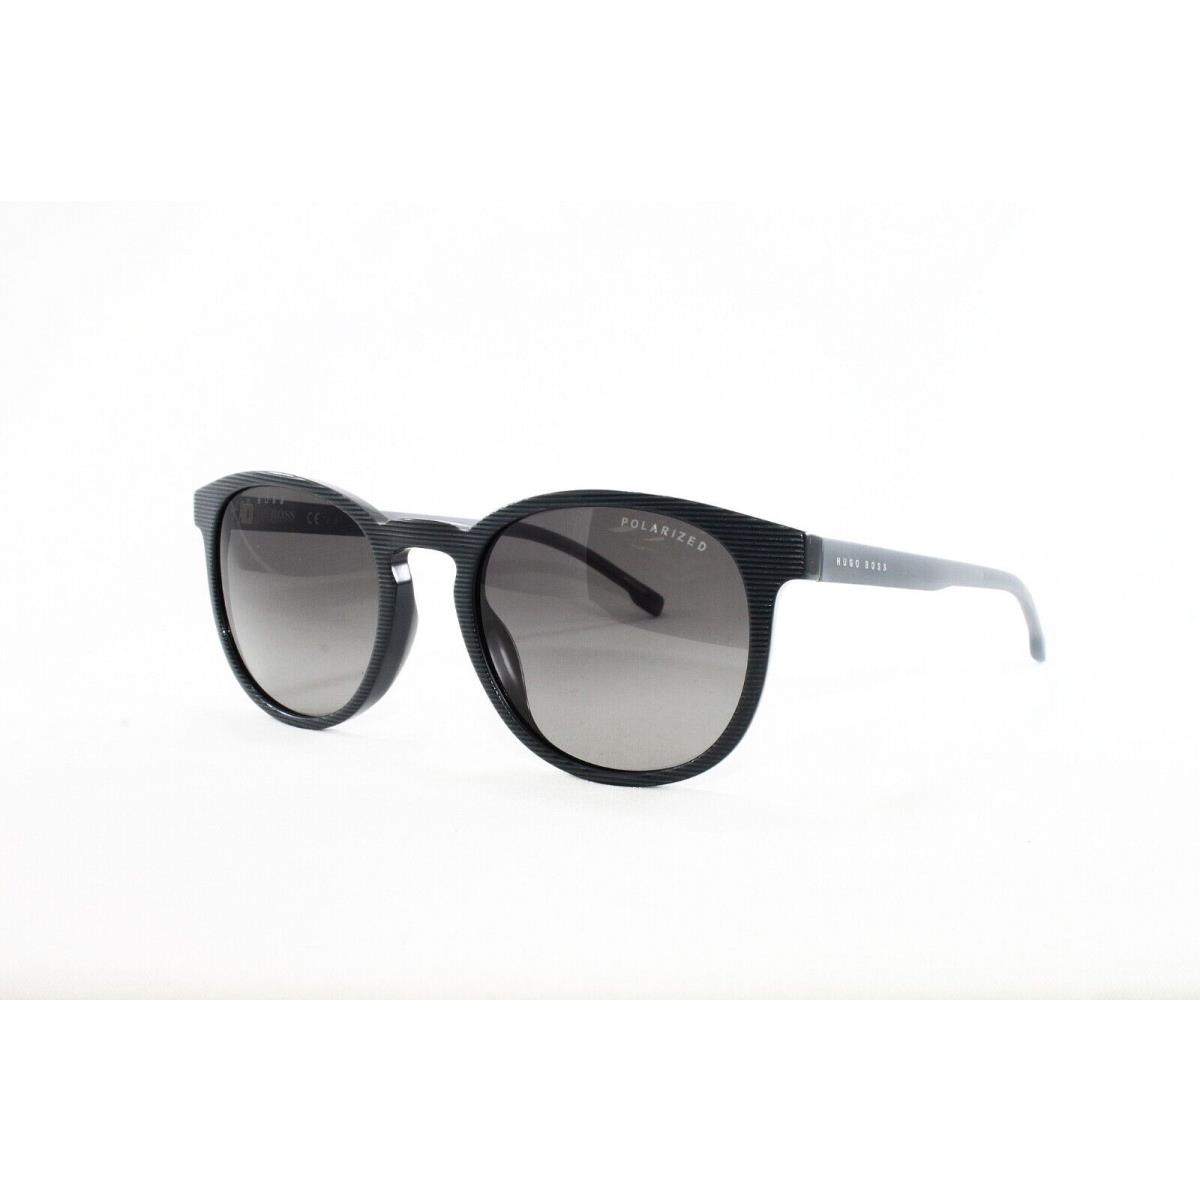 Boss Hugo Boss Sunglasses Men`s Round 922S Pzh Striped Grey 51mm Polarized - Frame: Gray, Lens: Gray